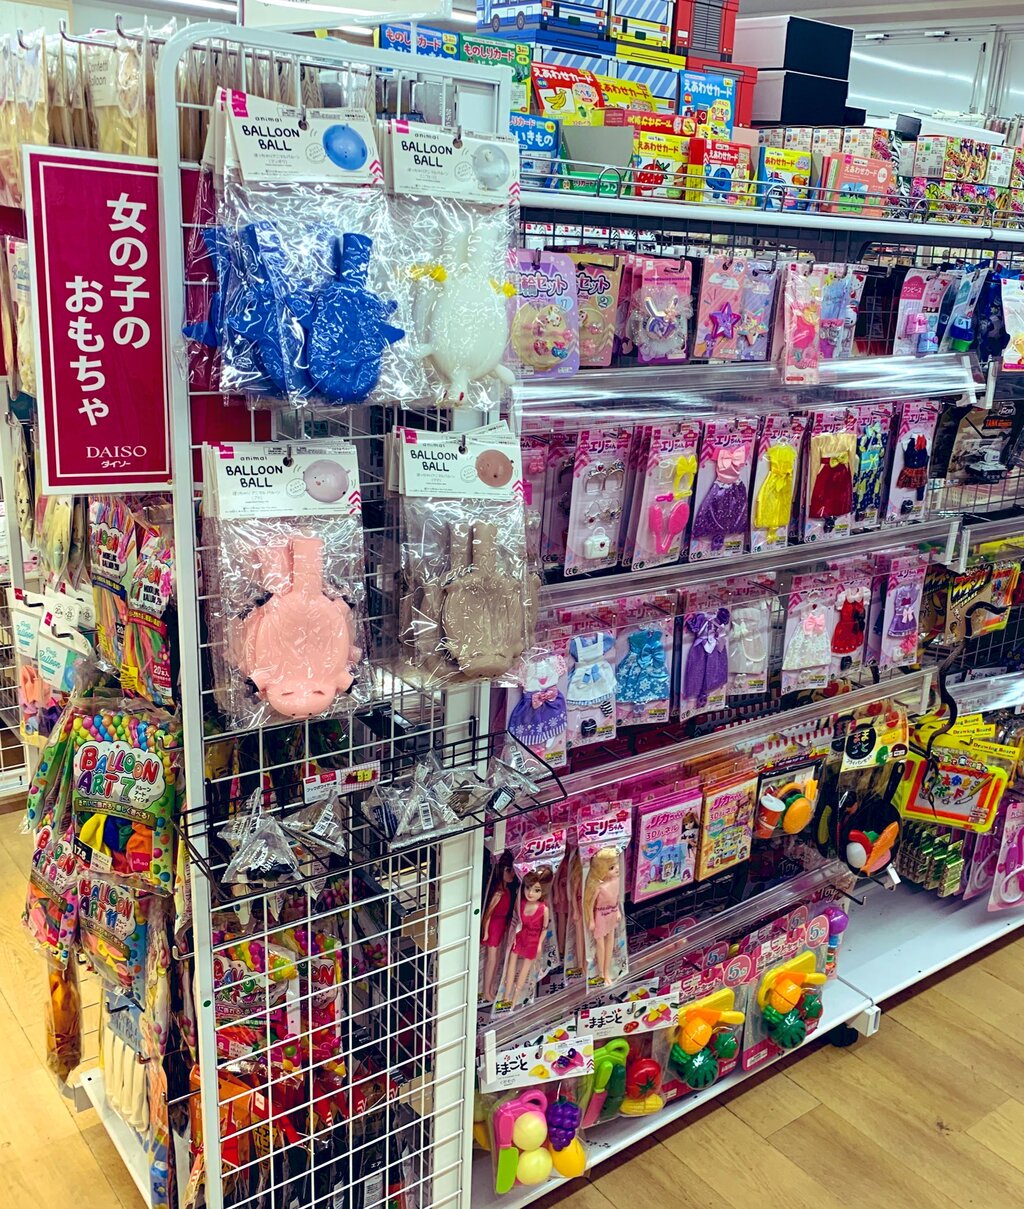 海外帰りのツイ民 日本は 女の子のおもちゃ 男の子のおもちゃ って分けられてるけど2021年でもこれって普通なの 違和感を感じる 2chニュースのまとめのまとめ